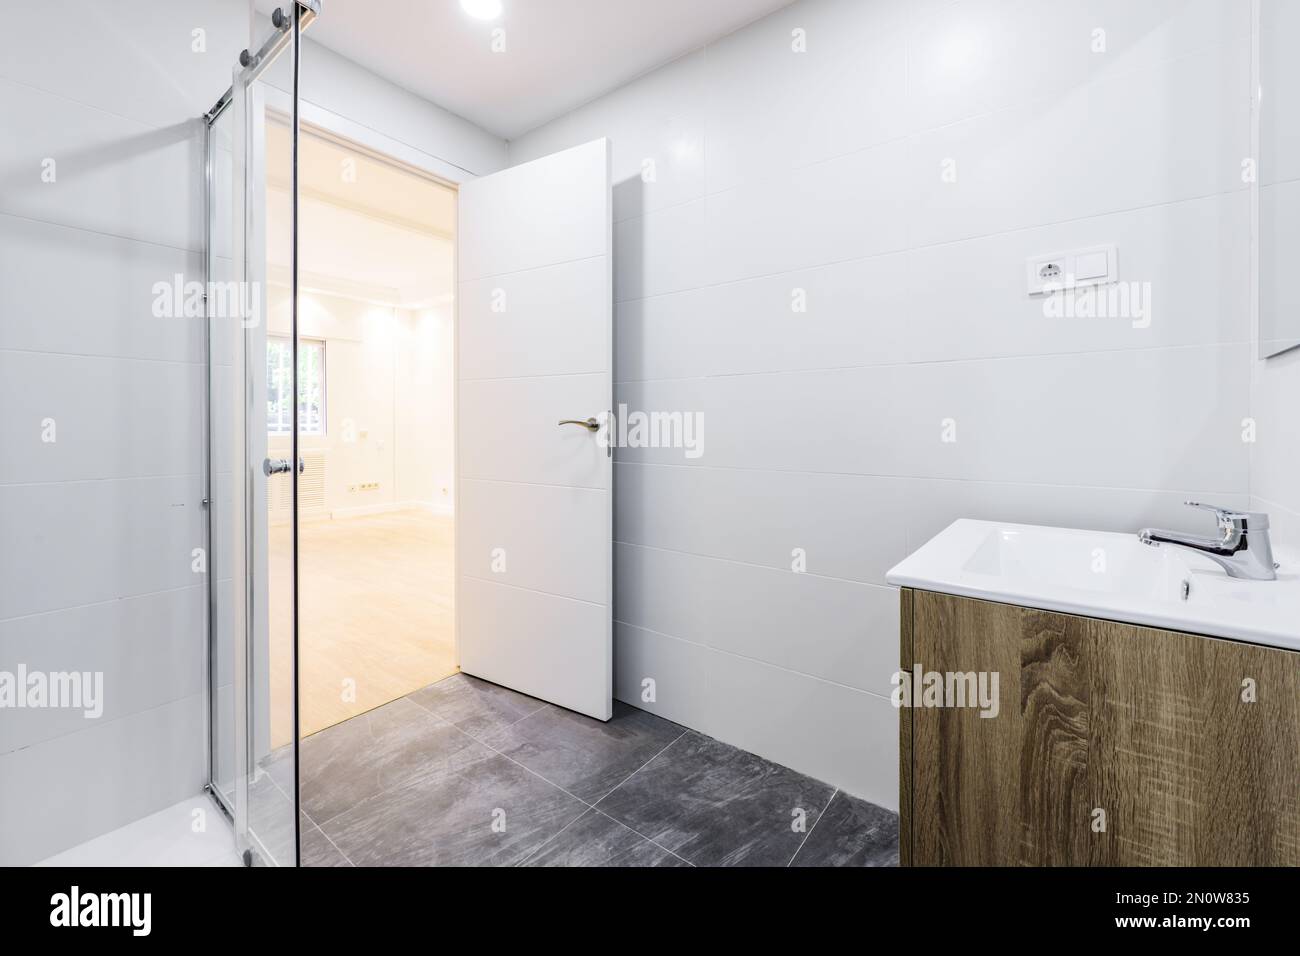 salle de bains avec lavabo en bois sous le miroir mural sans cadre, cabine de douche avec écrans Banque D'Images